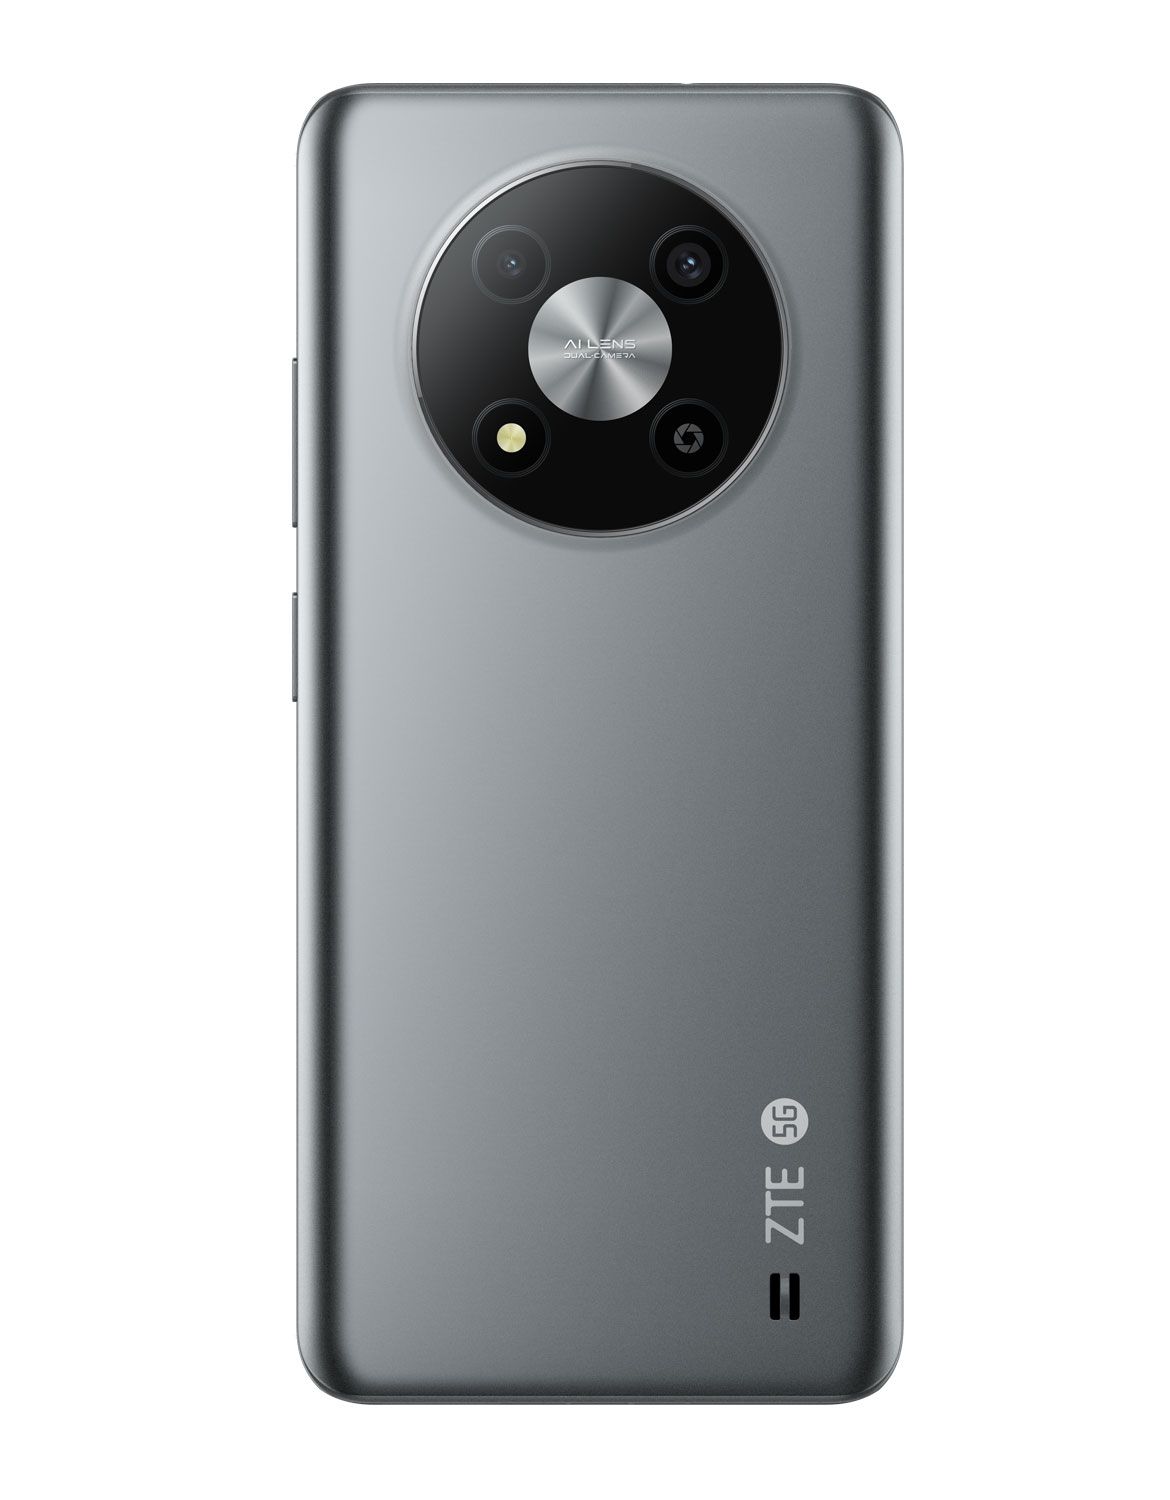 128 2,2 Kamera 5G Dual expert von 5G (Grau) GHz Android cm (6.5 Technomarkt MP Sim A73 Blade 16,6 Smartphone 50 Zoll) Dual ZTE GB